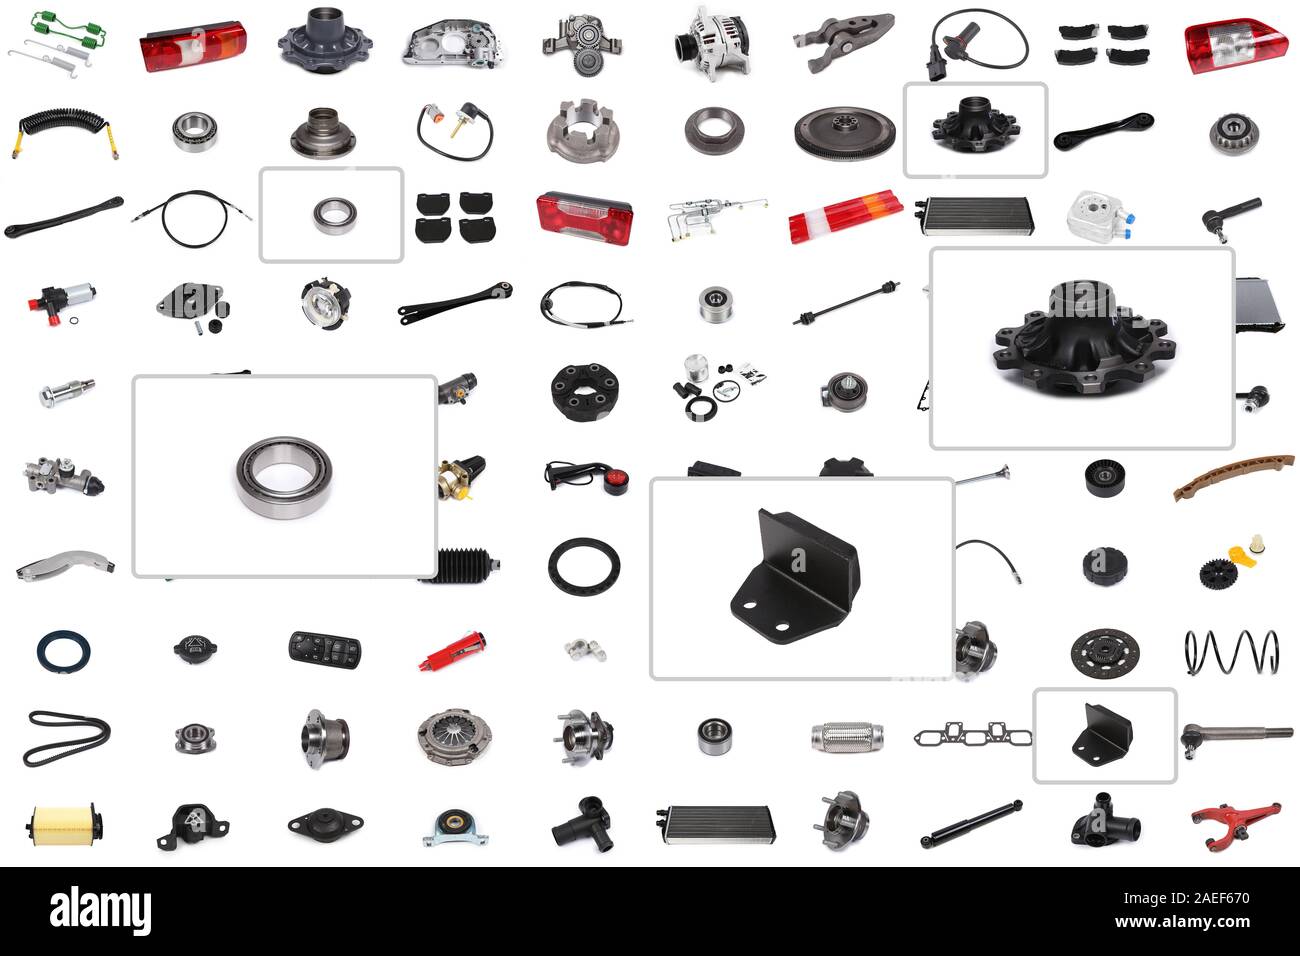 Hintergrund für einen Katalog oder ein Auto parts Auswahl Programm mit einem Schwerpunkt auf drei Teile: Lager, Radnabe, Chipper. Stockfoto